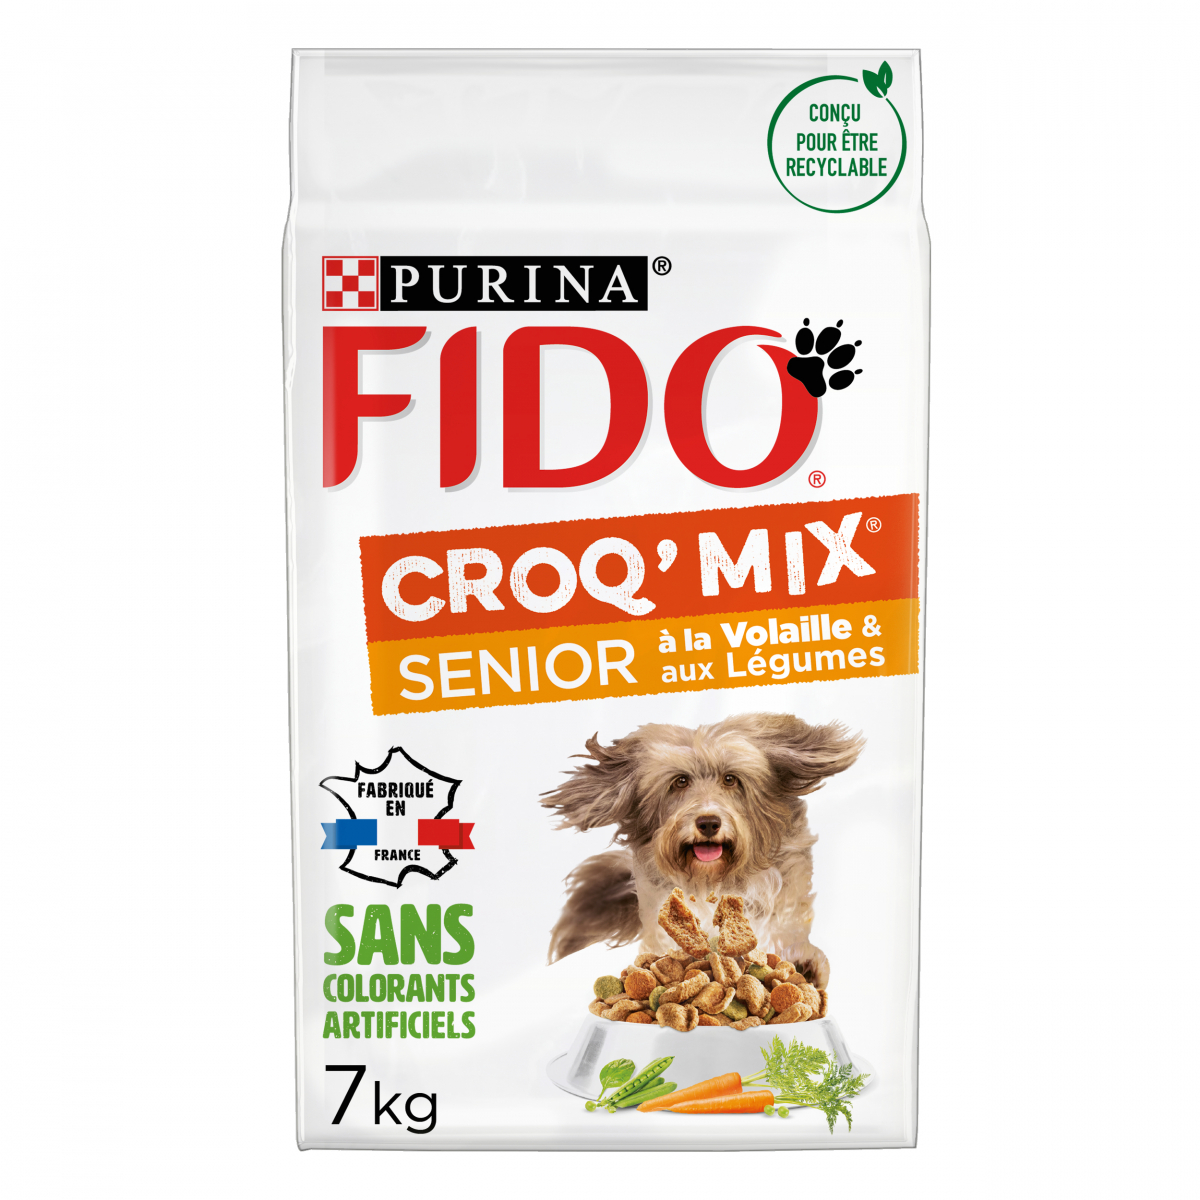 FIDO Croq Mix à la volaille et aux légumes pour chien senior